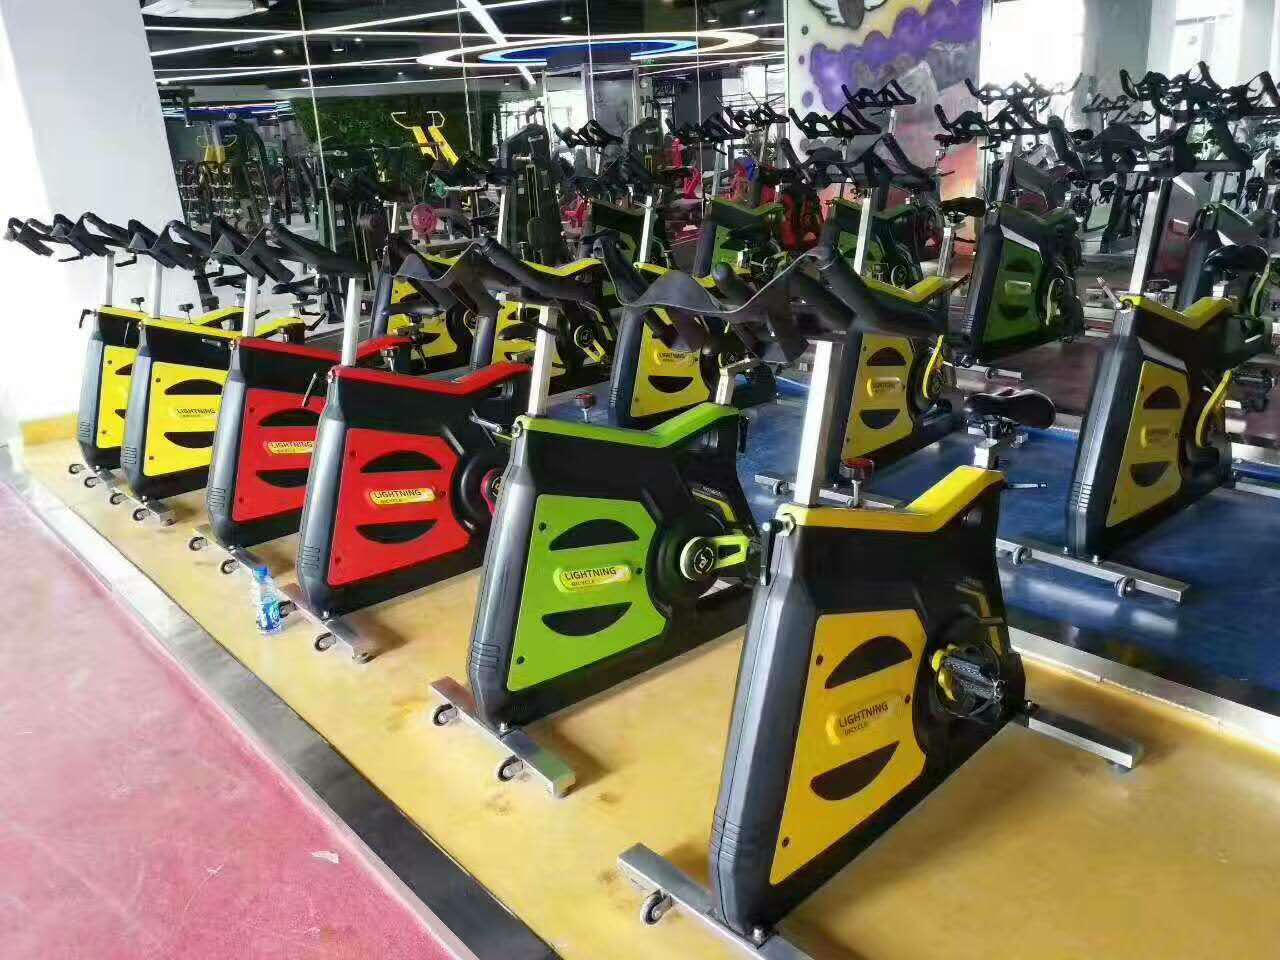 山东奥信德健身器材厂家直销健身房商用单车健身车动感单车